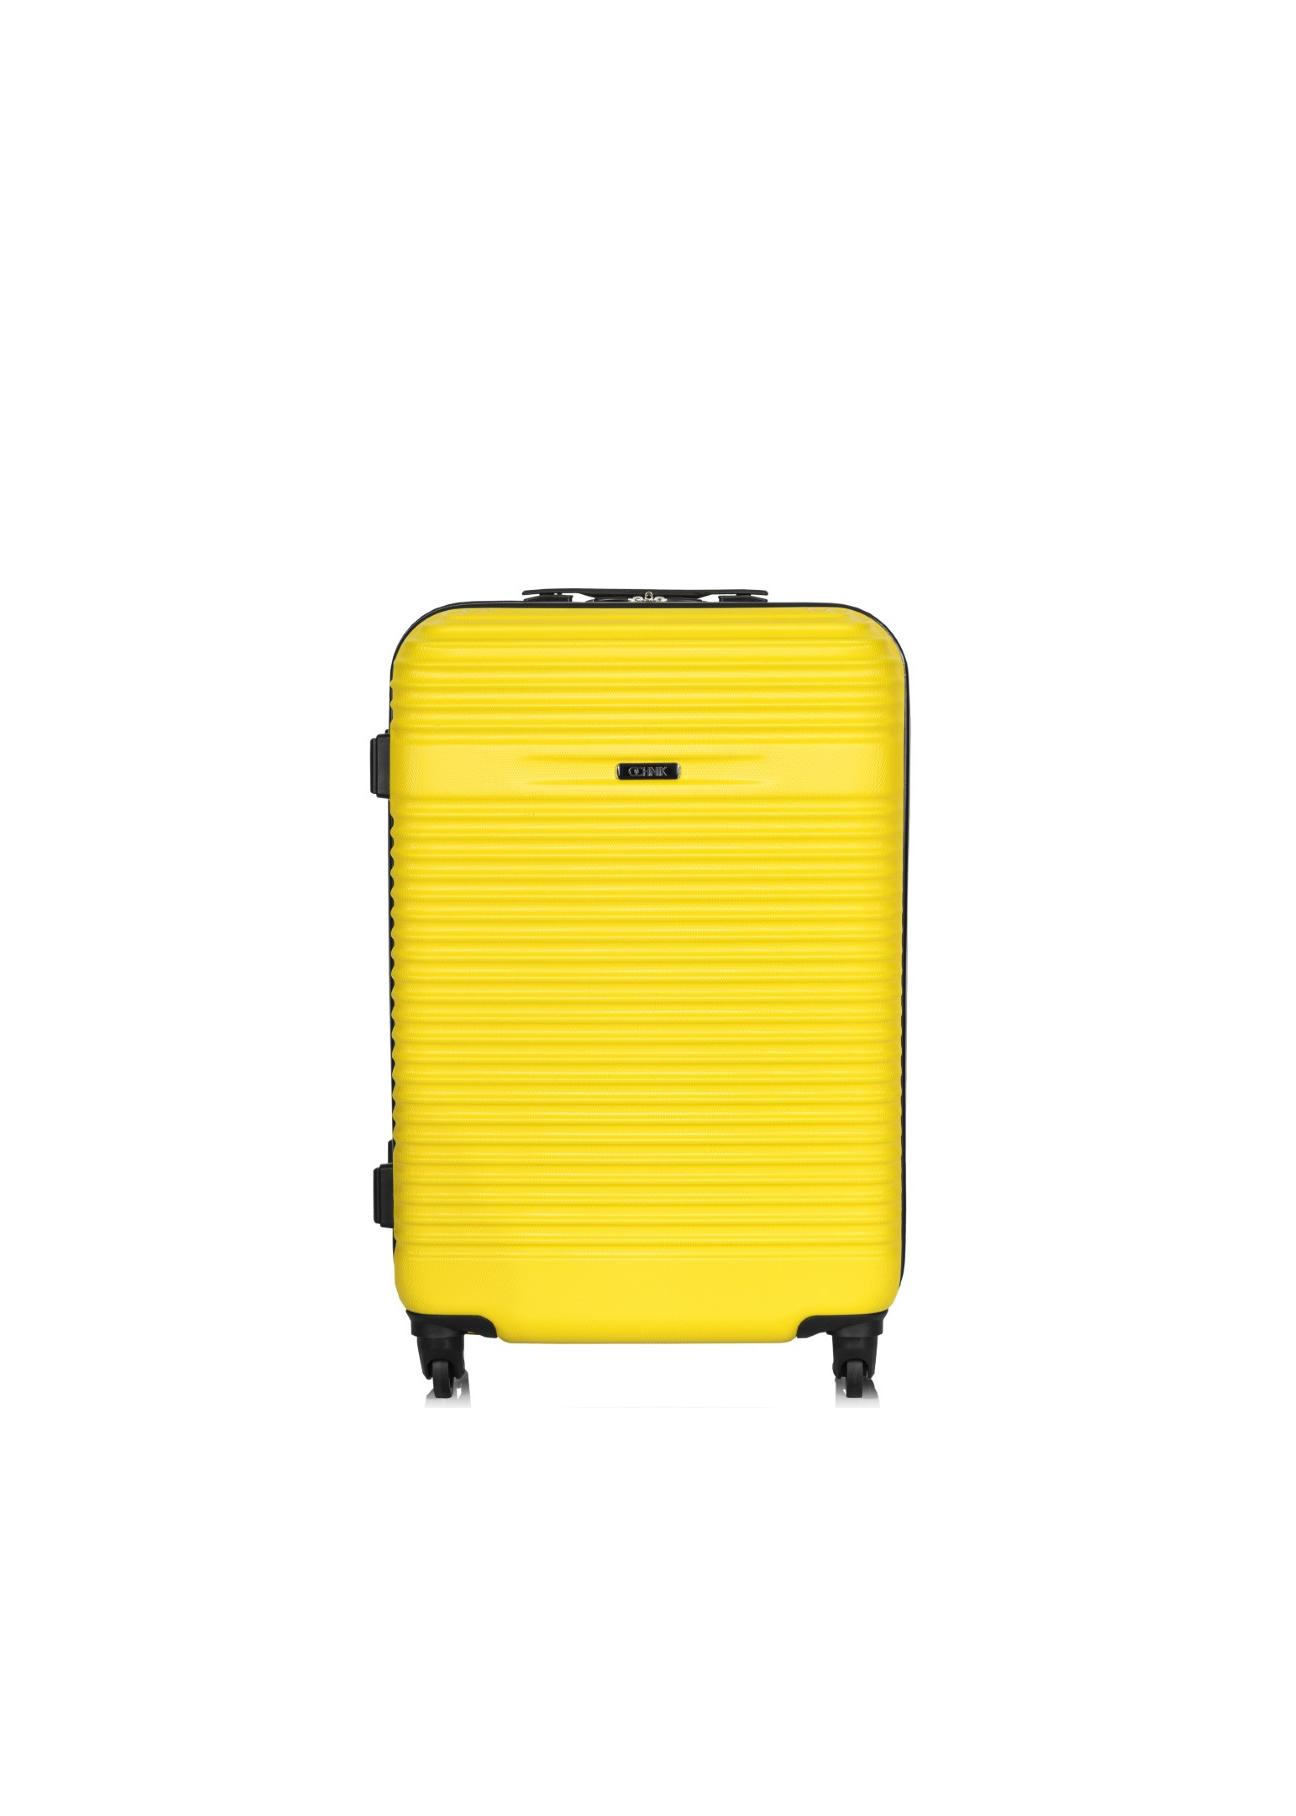 Mała walizka na kółkach WALAB-0021-21-18